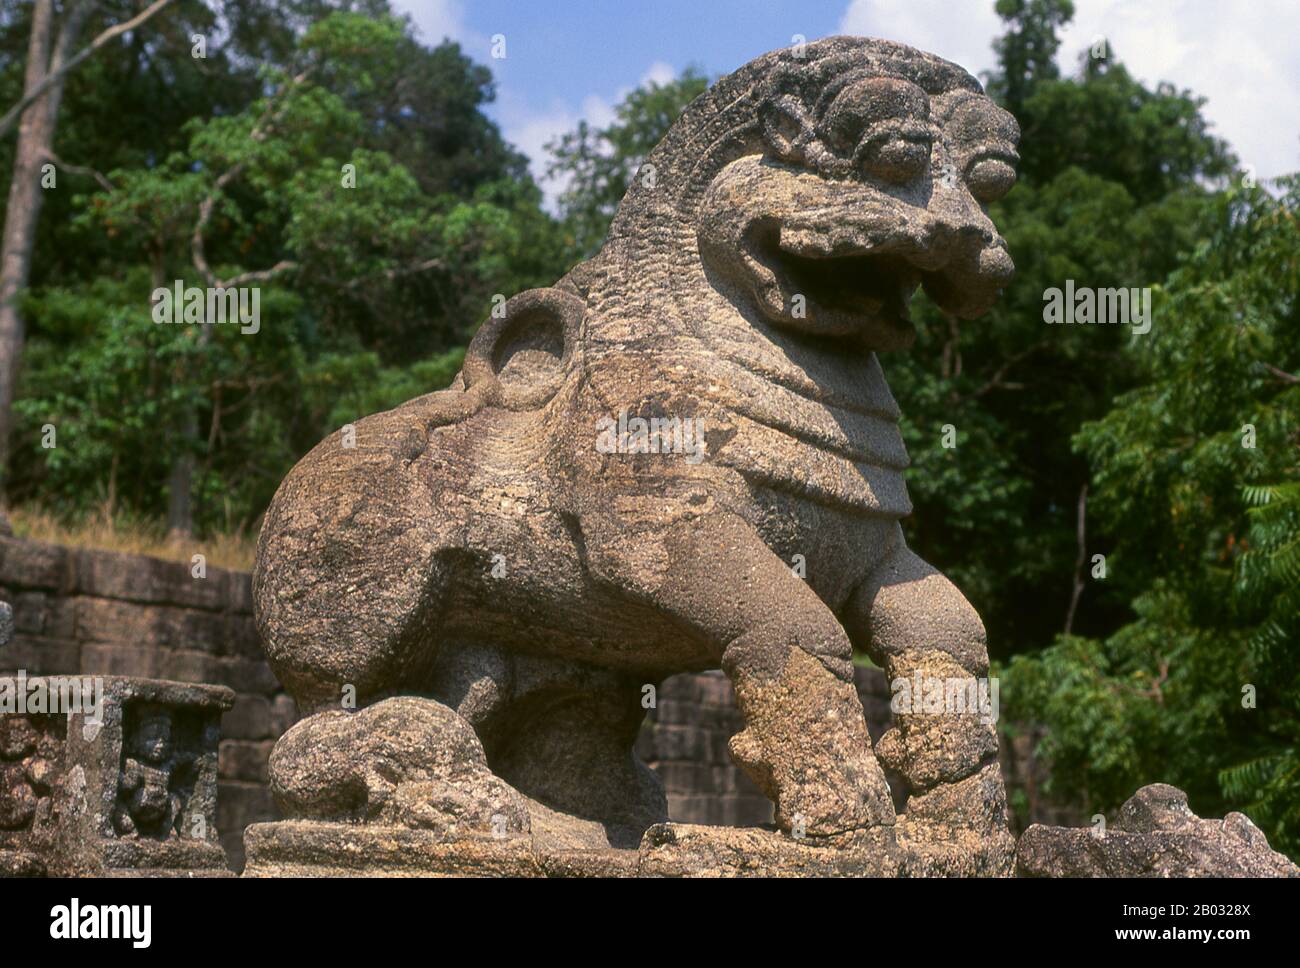 L'ancienne forteresse rocheuse de Yapahuwa est semblable à Sigiriya, mais plus petite. Datant du XIIIe siècle, c'était la capitale et le principal bastion du roi Bhuvanekabahu I (1272 - 1284), qui résistait aux invasions du sud de l'Inde. Aujourd'hui, un escalier ornemental raide mène à une plate-forme qui soutenait autrefois un temple qui aurait servi de dépôt temporaire pour la relique de la dent Sainte, maintenant au Temple de la dent à Kandy. Yapahuwa a été appelé Shubha-Giri dans les chroniques Srilankan, éclairé. «La Montagne Propice». Banque D'Images